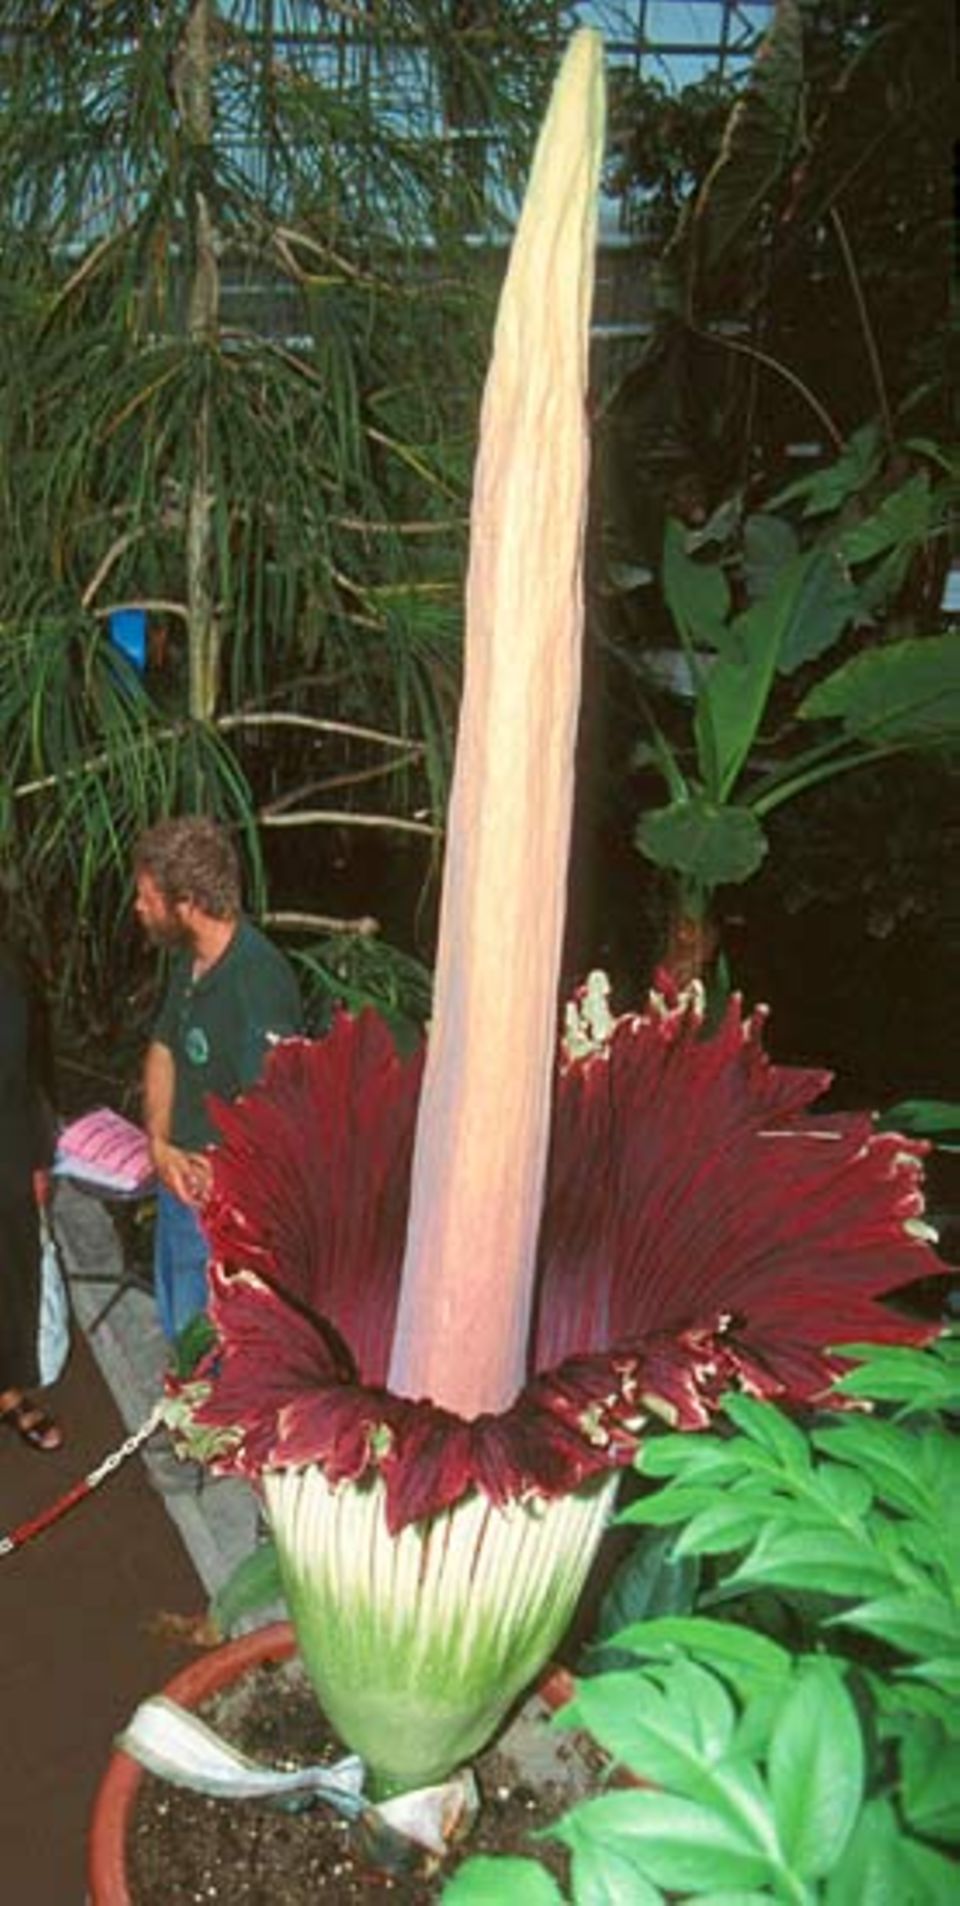 Die Riesenblume blüht in unregelmäßigen Abständen von mehreren Jahren. Das letzte Mal war die Blüte im Juli 2000 in Bonn zu sehen